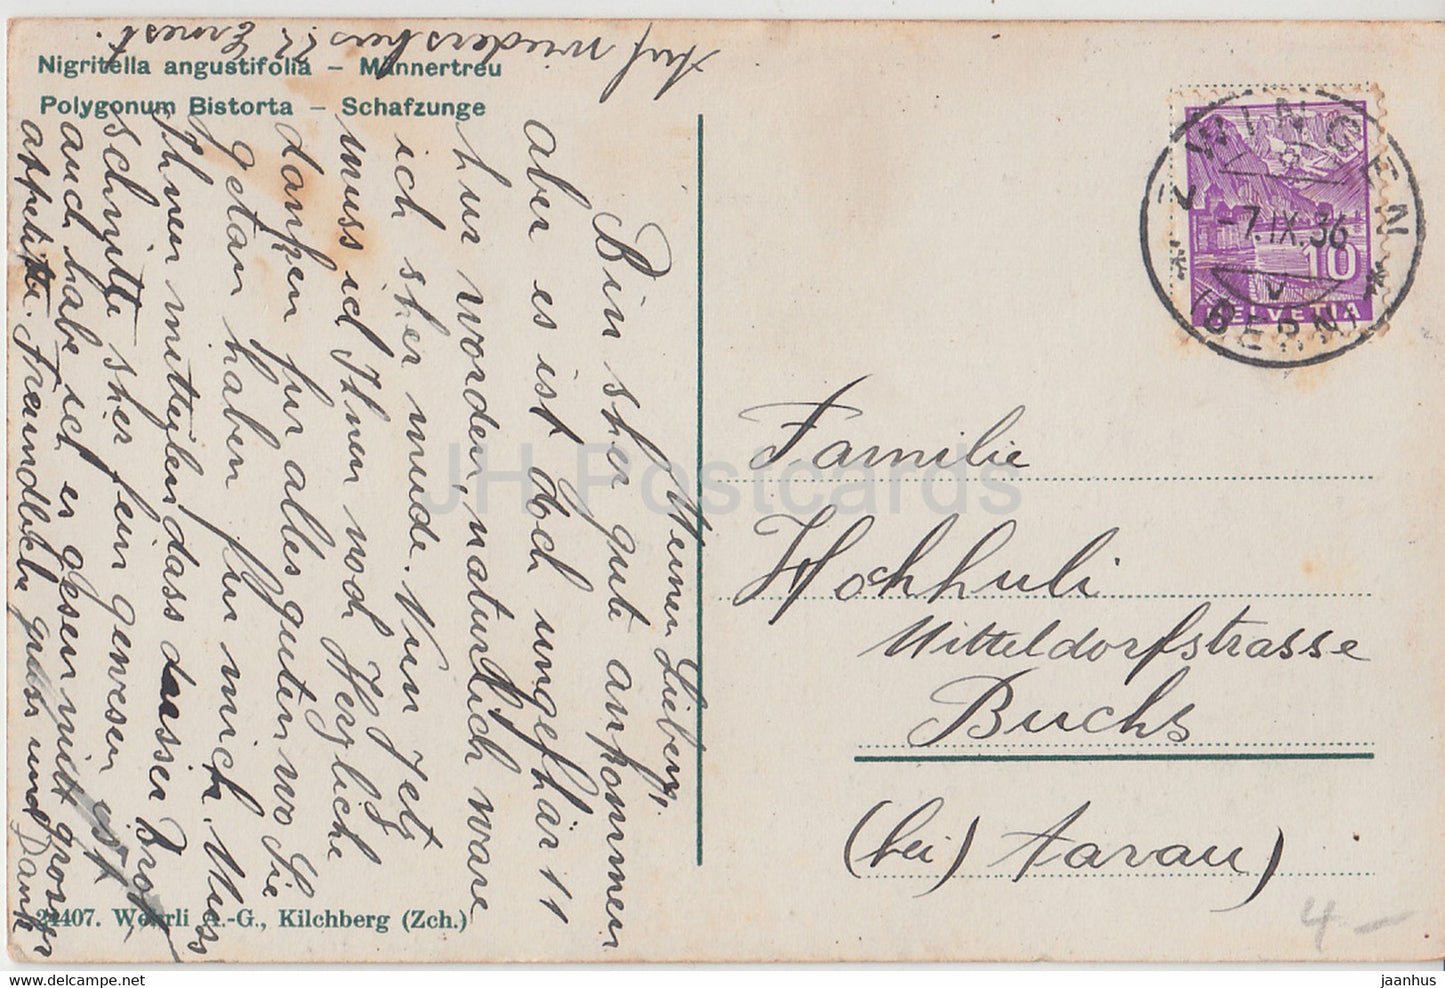 Nigritella angustifolia - Mannertreu - Polygonum Bistrota - Blumen - 24407 - alte Postkarte - 1936 - Schweiz - gebraucht